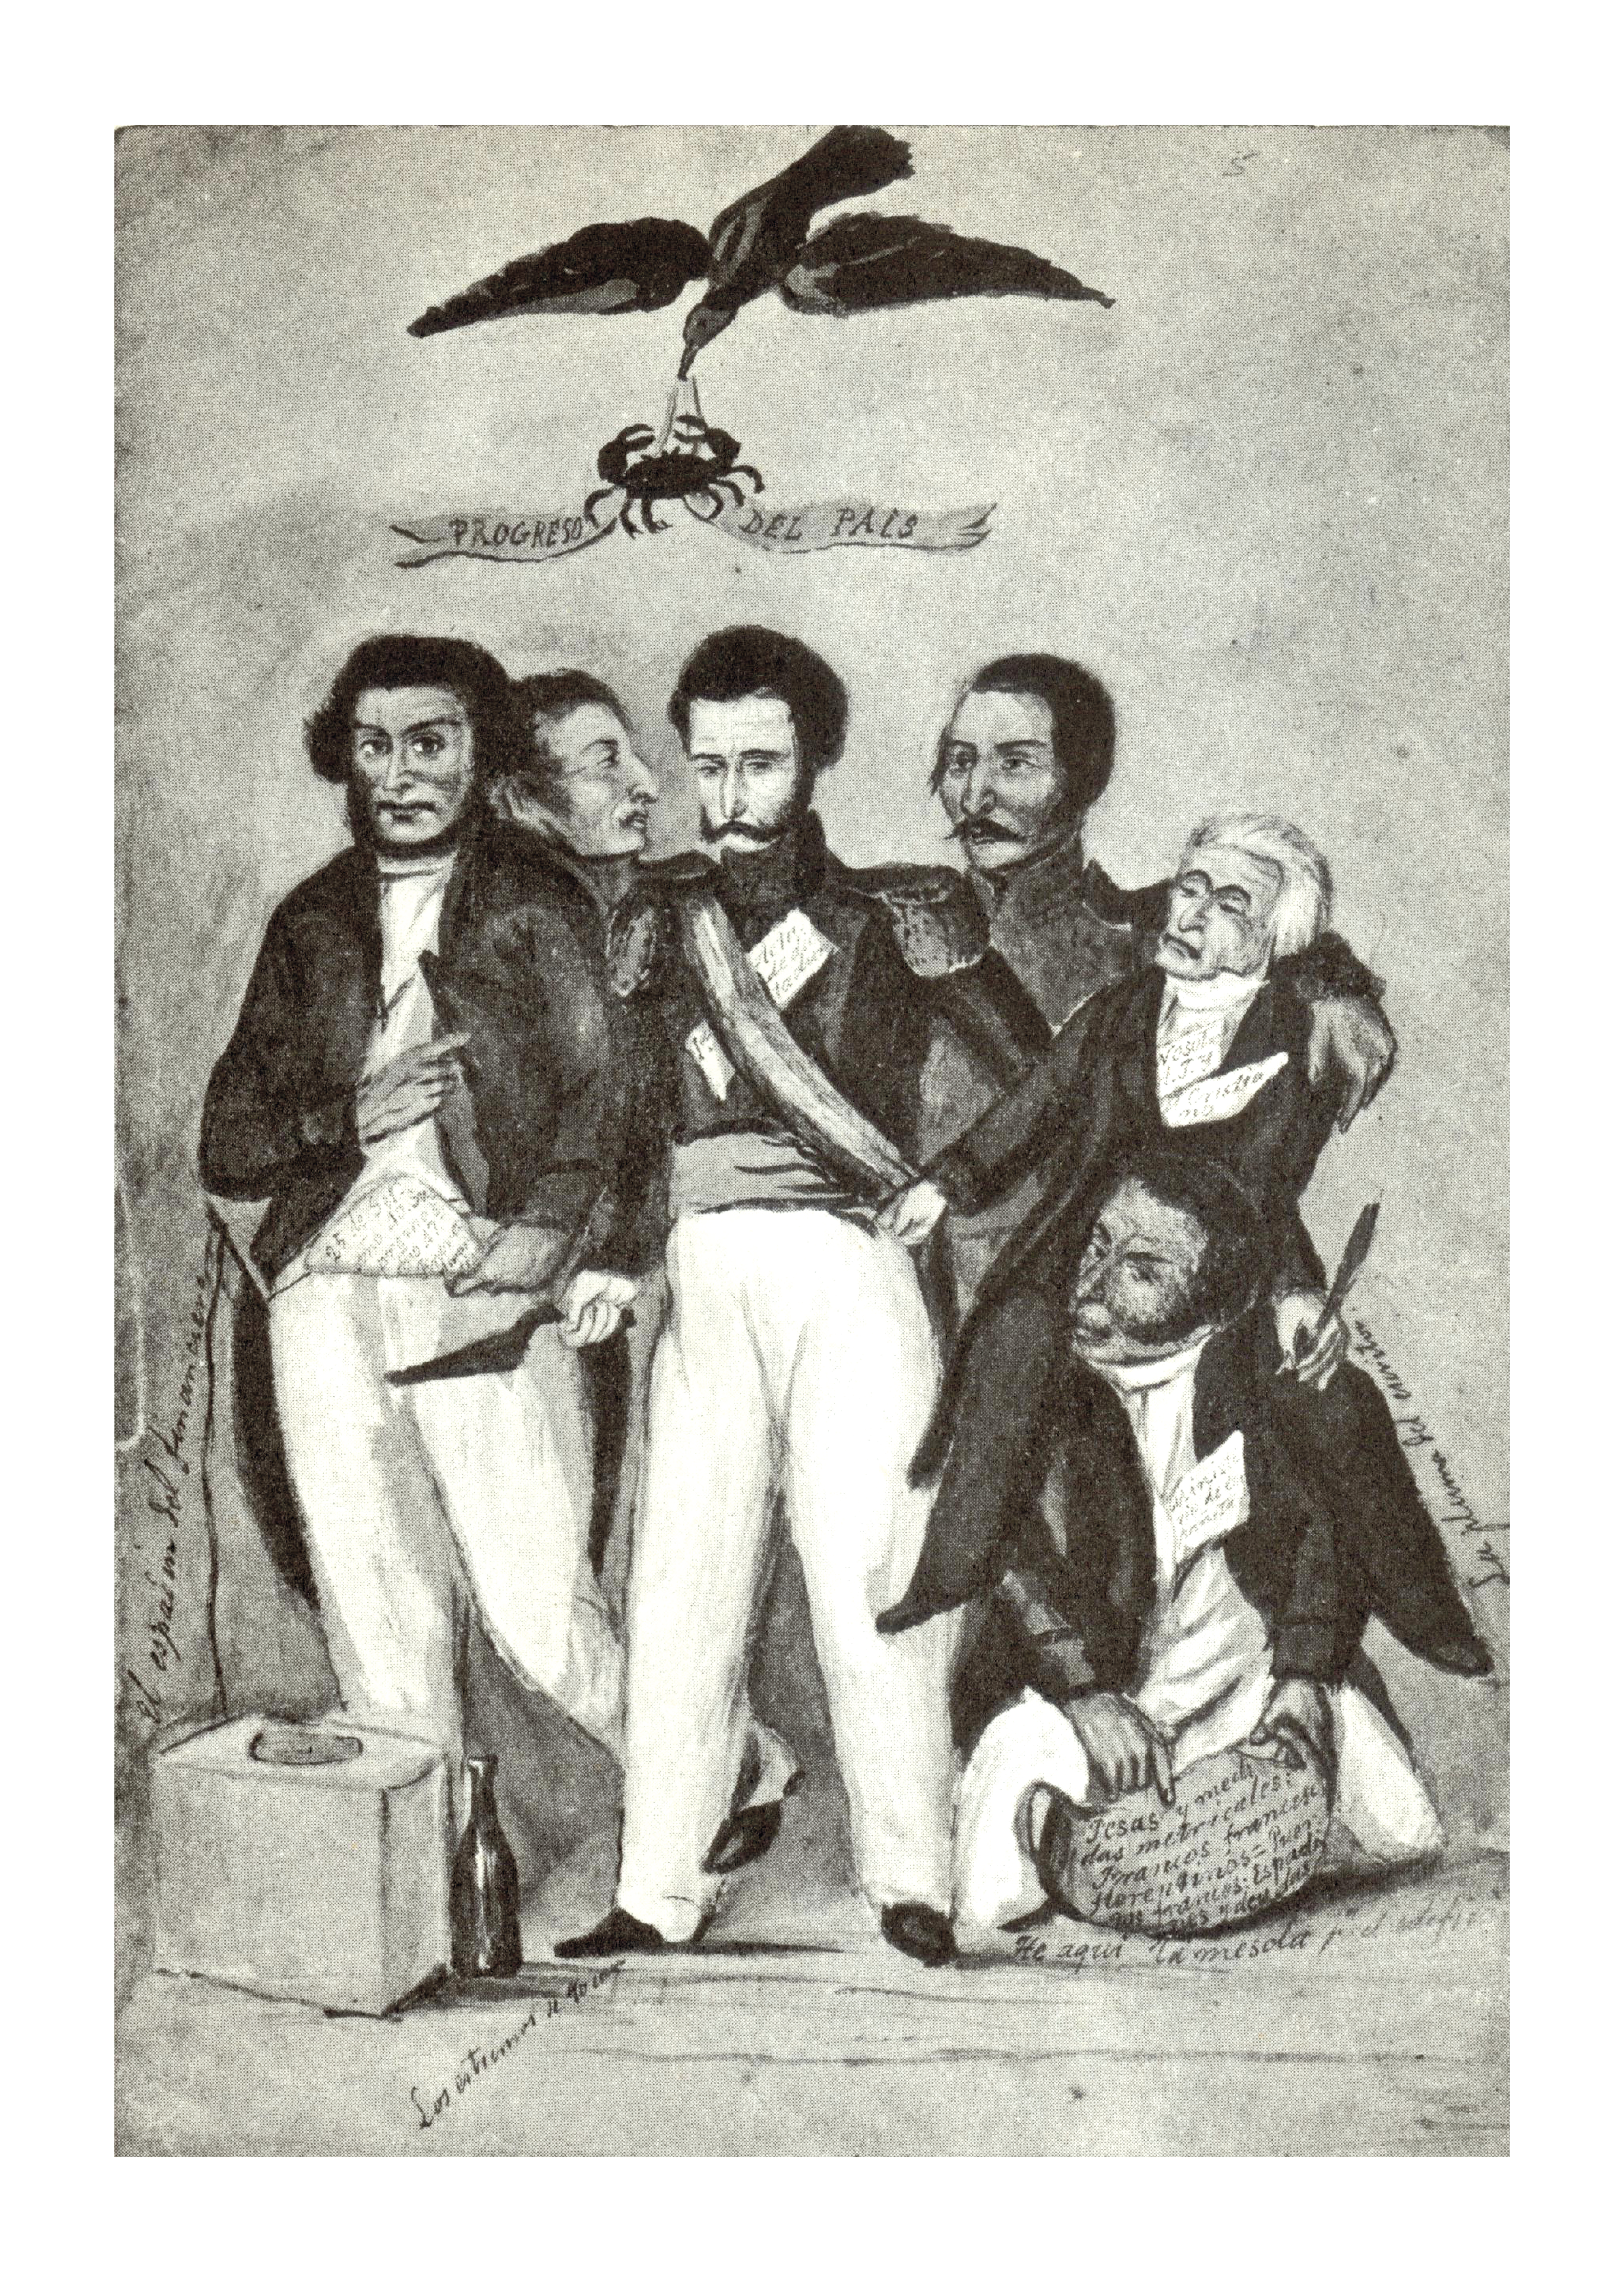 La era del progreso, José Manuel Groot, ca. 1849.